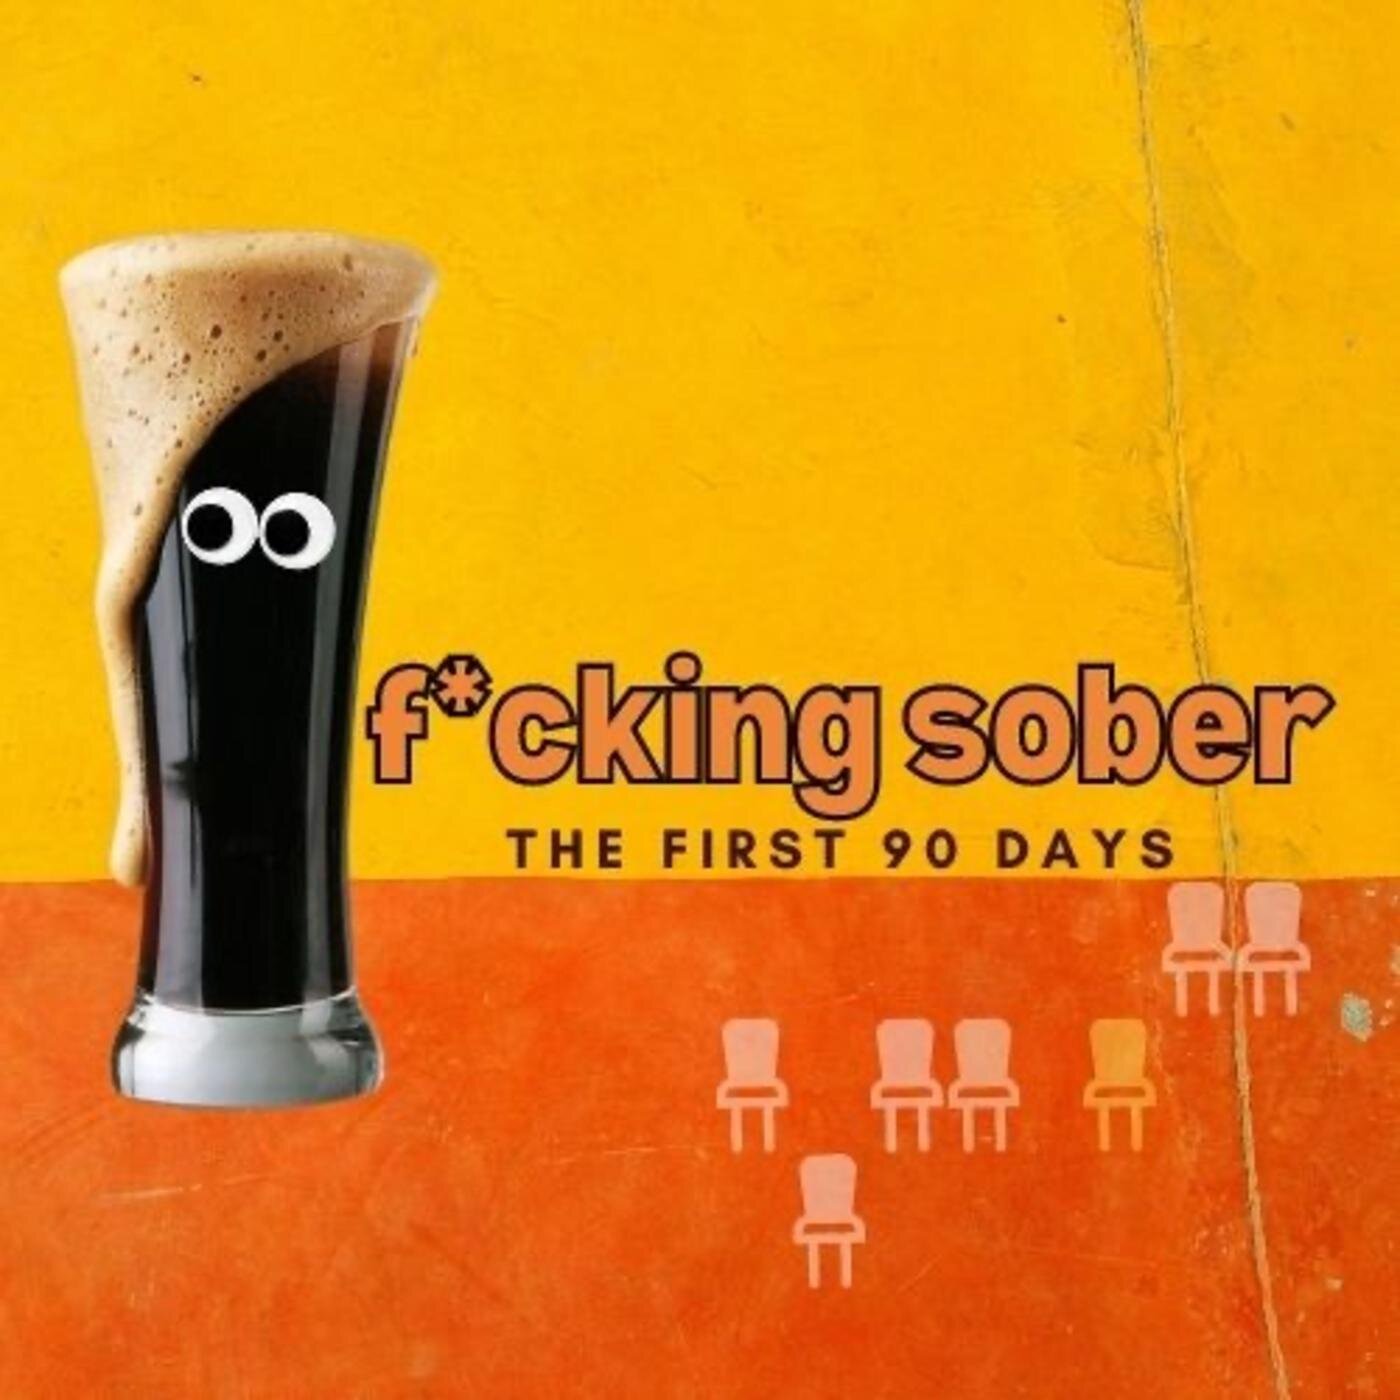 f*cking sober